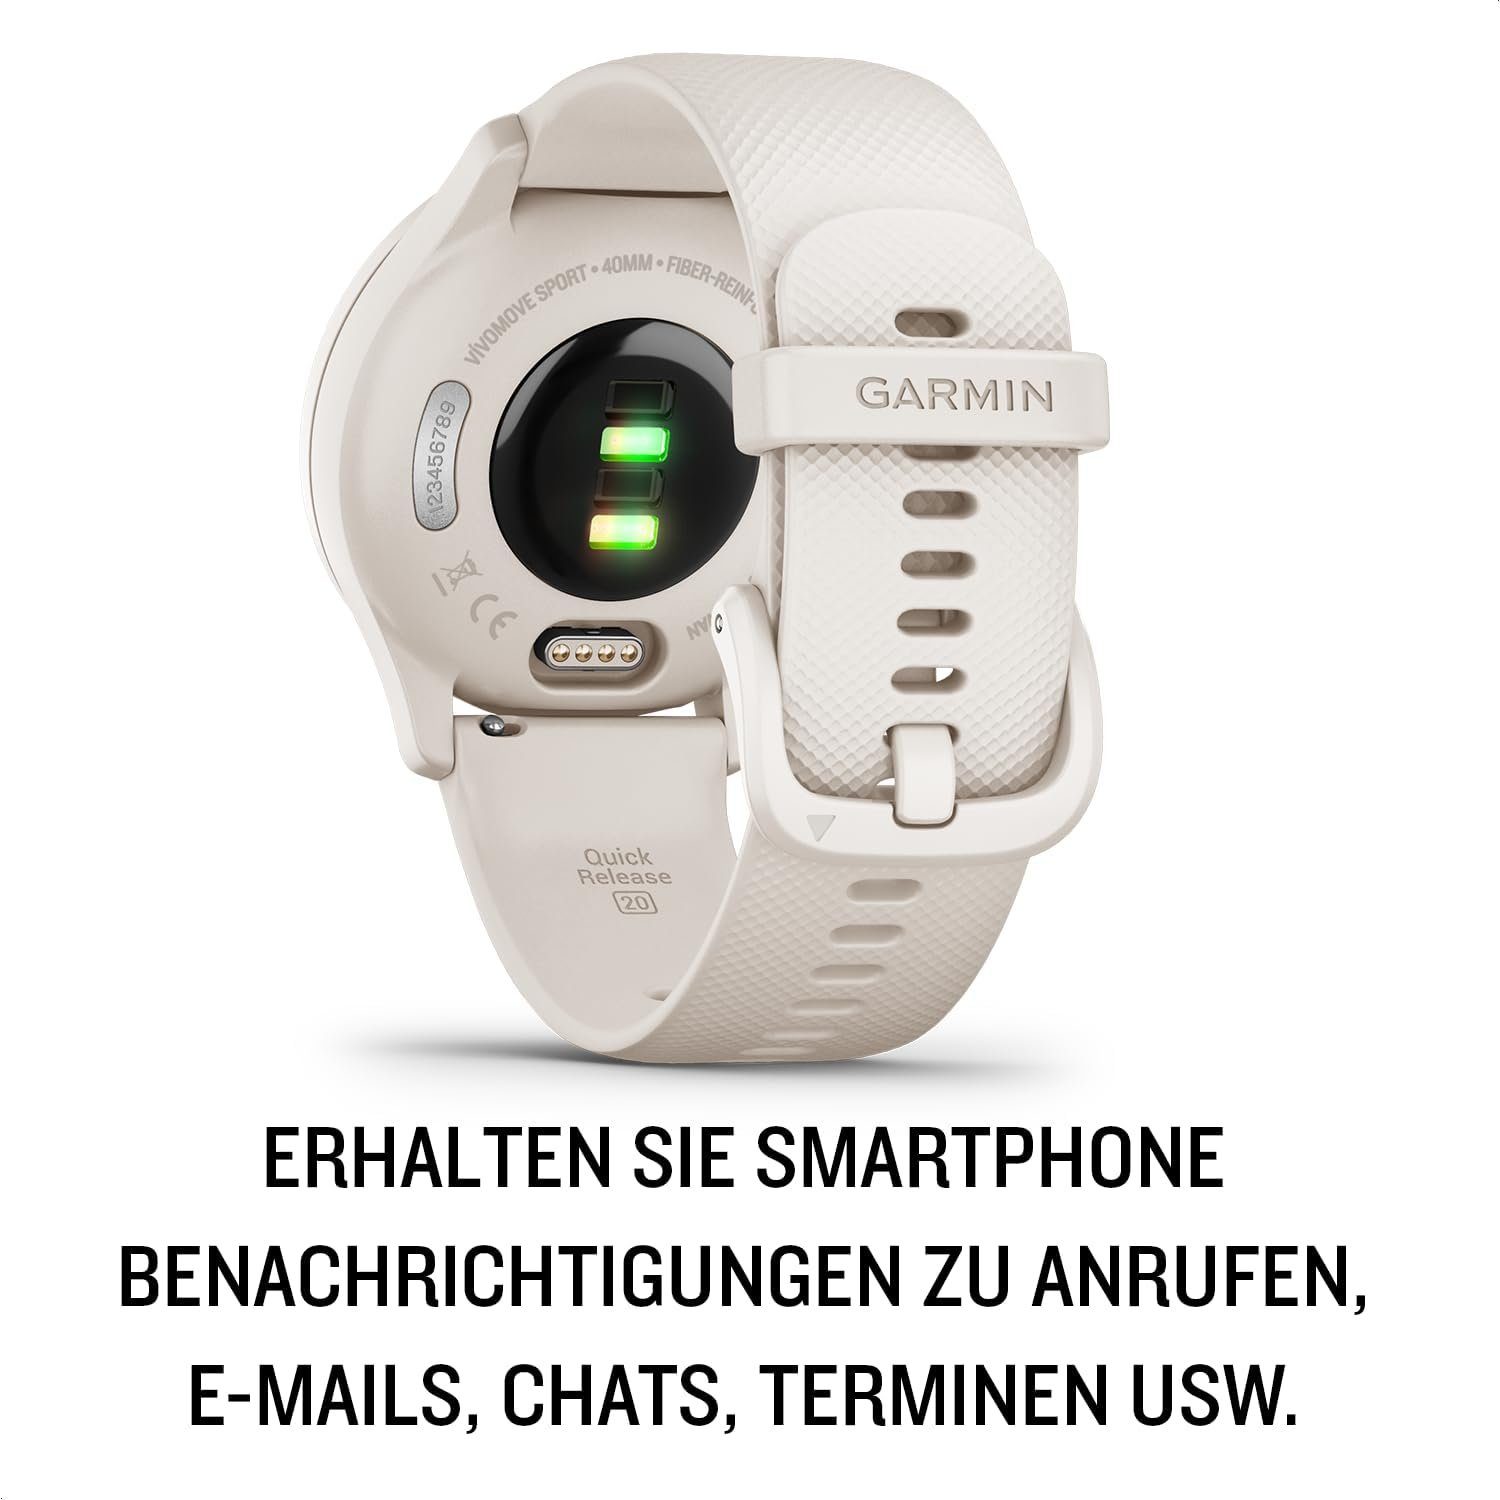 Sport- und iOS), Zeigern Smartwatch Gesundheitsfunktionen Touchdisplay. Smartphone (Android Garmin und